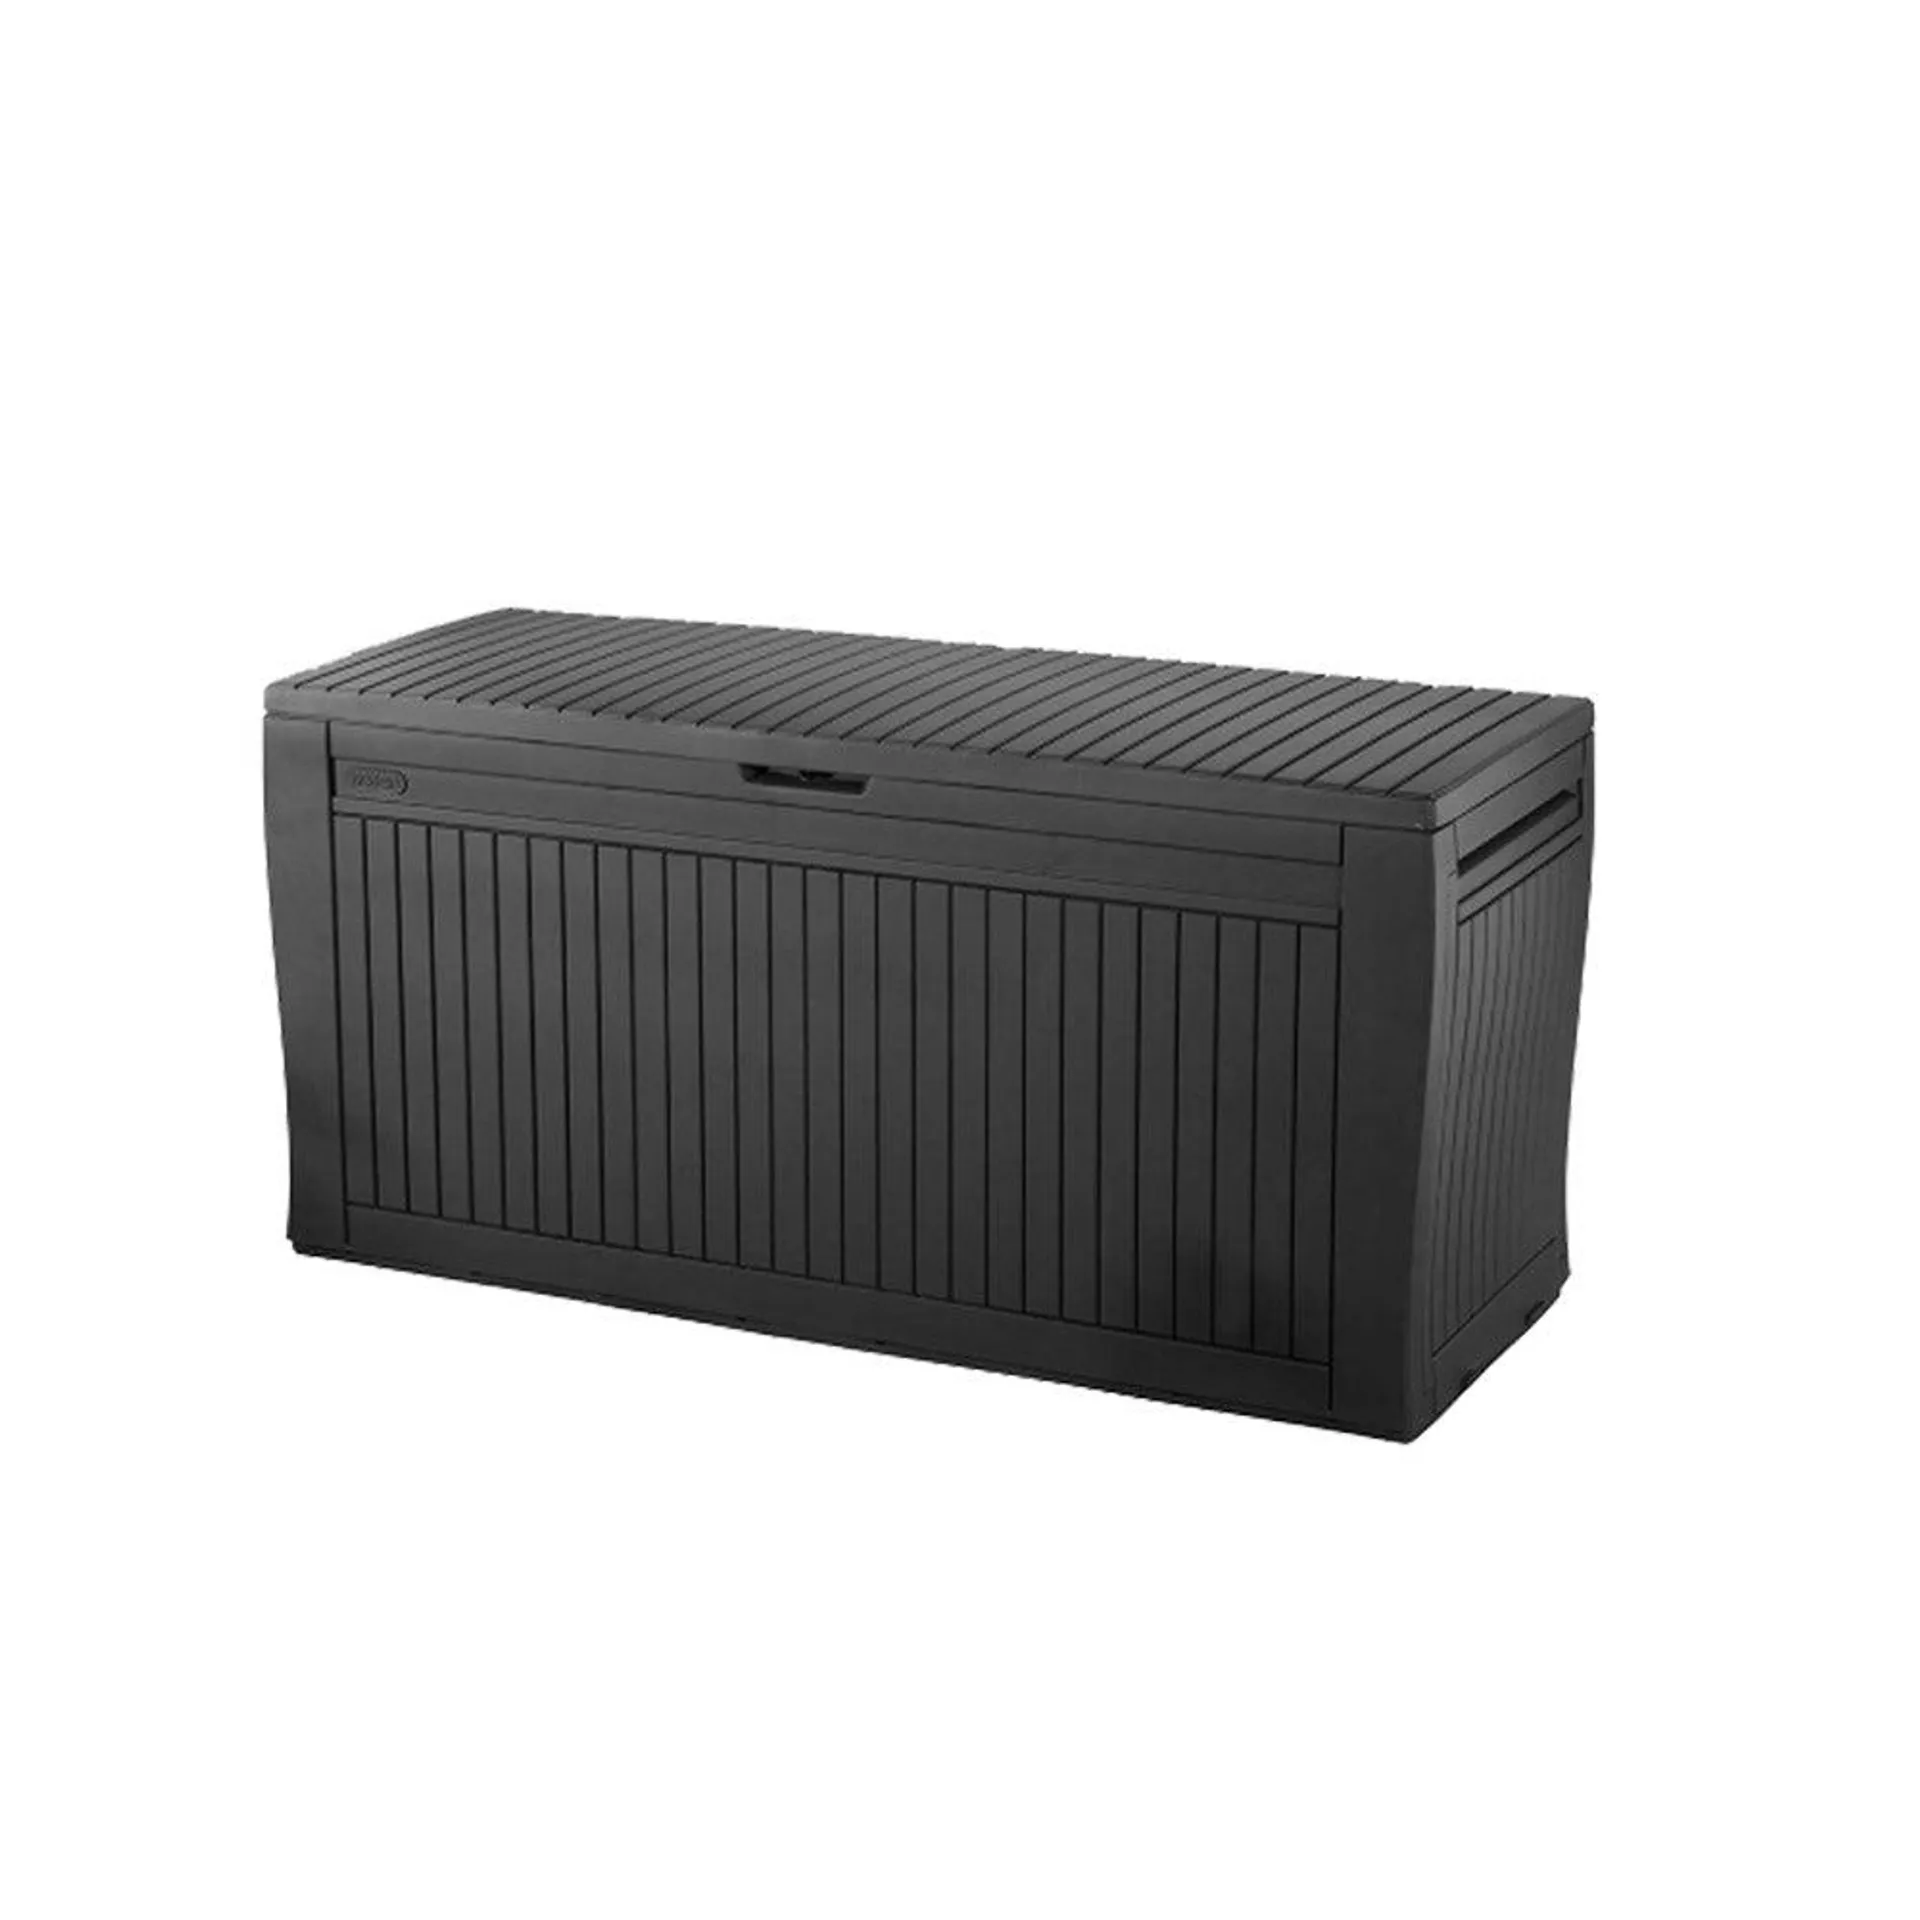 Keter Outdoor Storage Box 270L